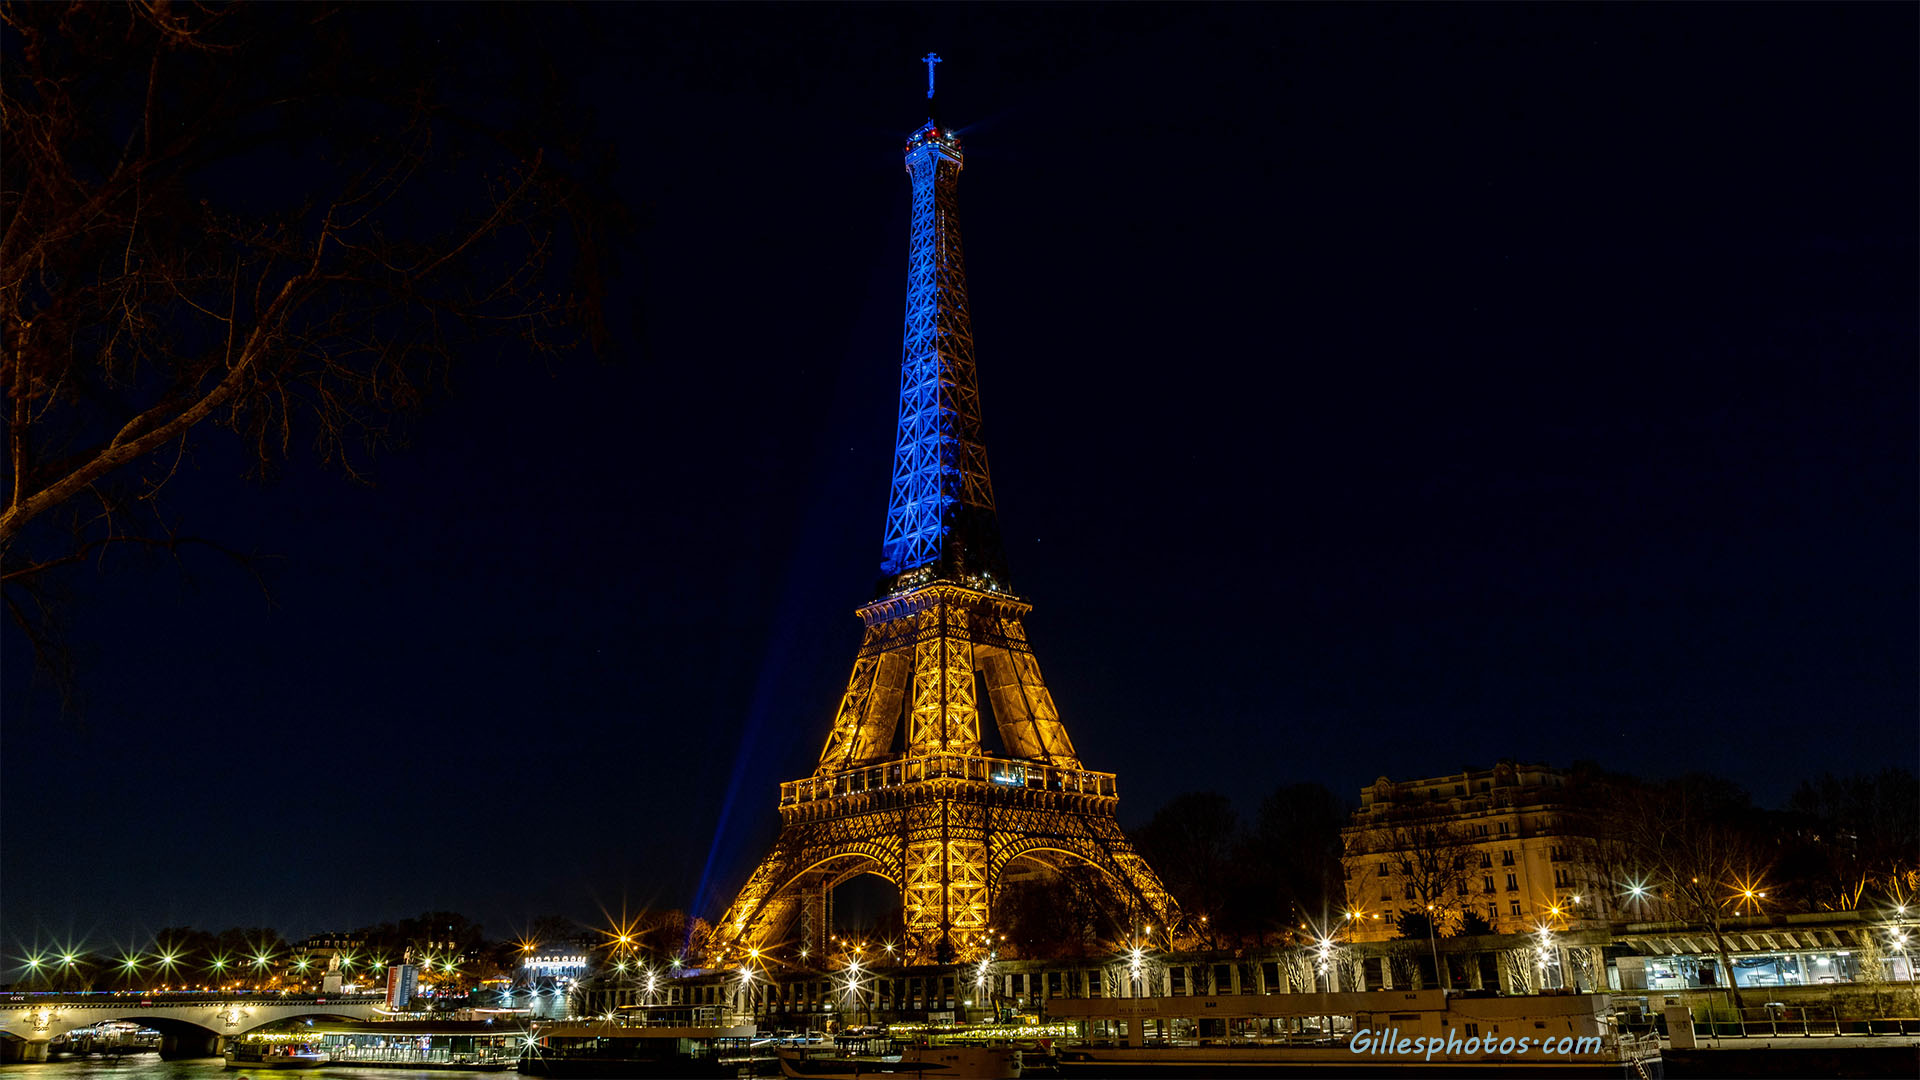 Février 2022 : La tour Eiffel aux couleurs de l'Ukraine en soutien aux Ukrainiens